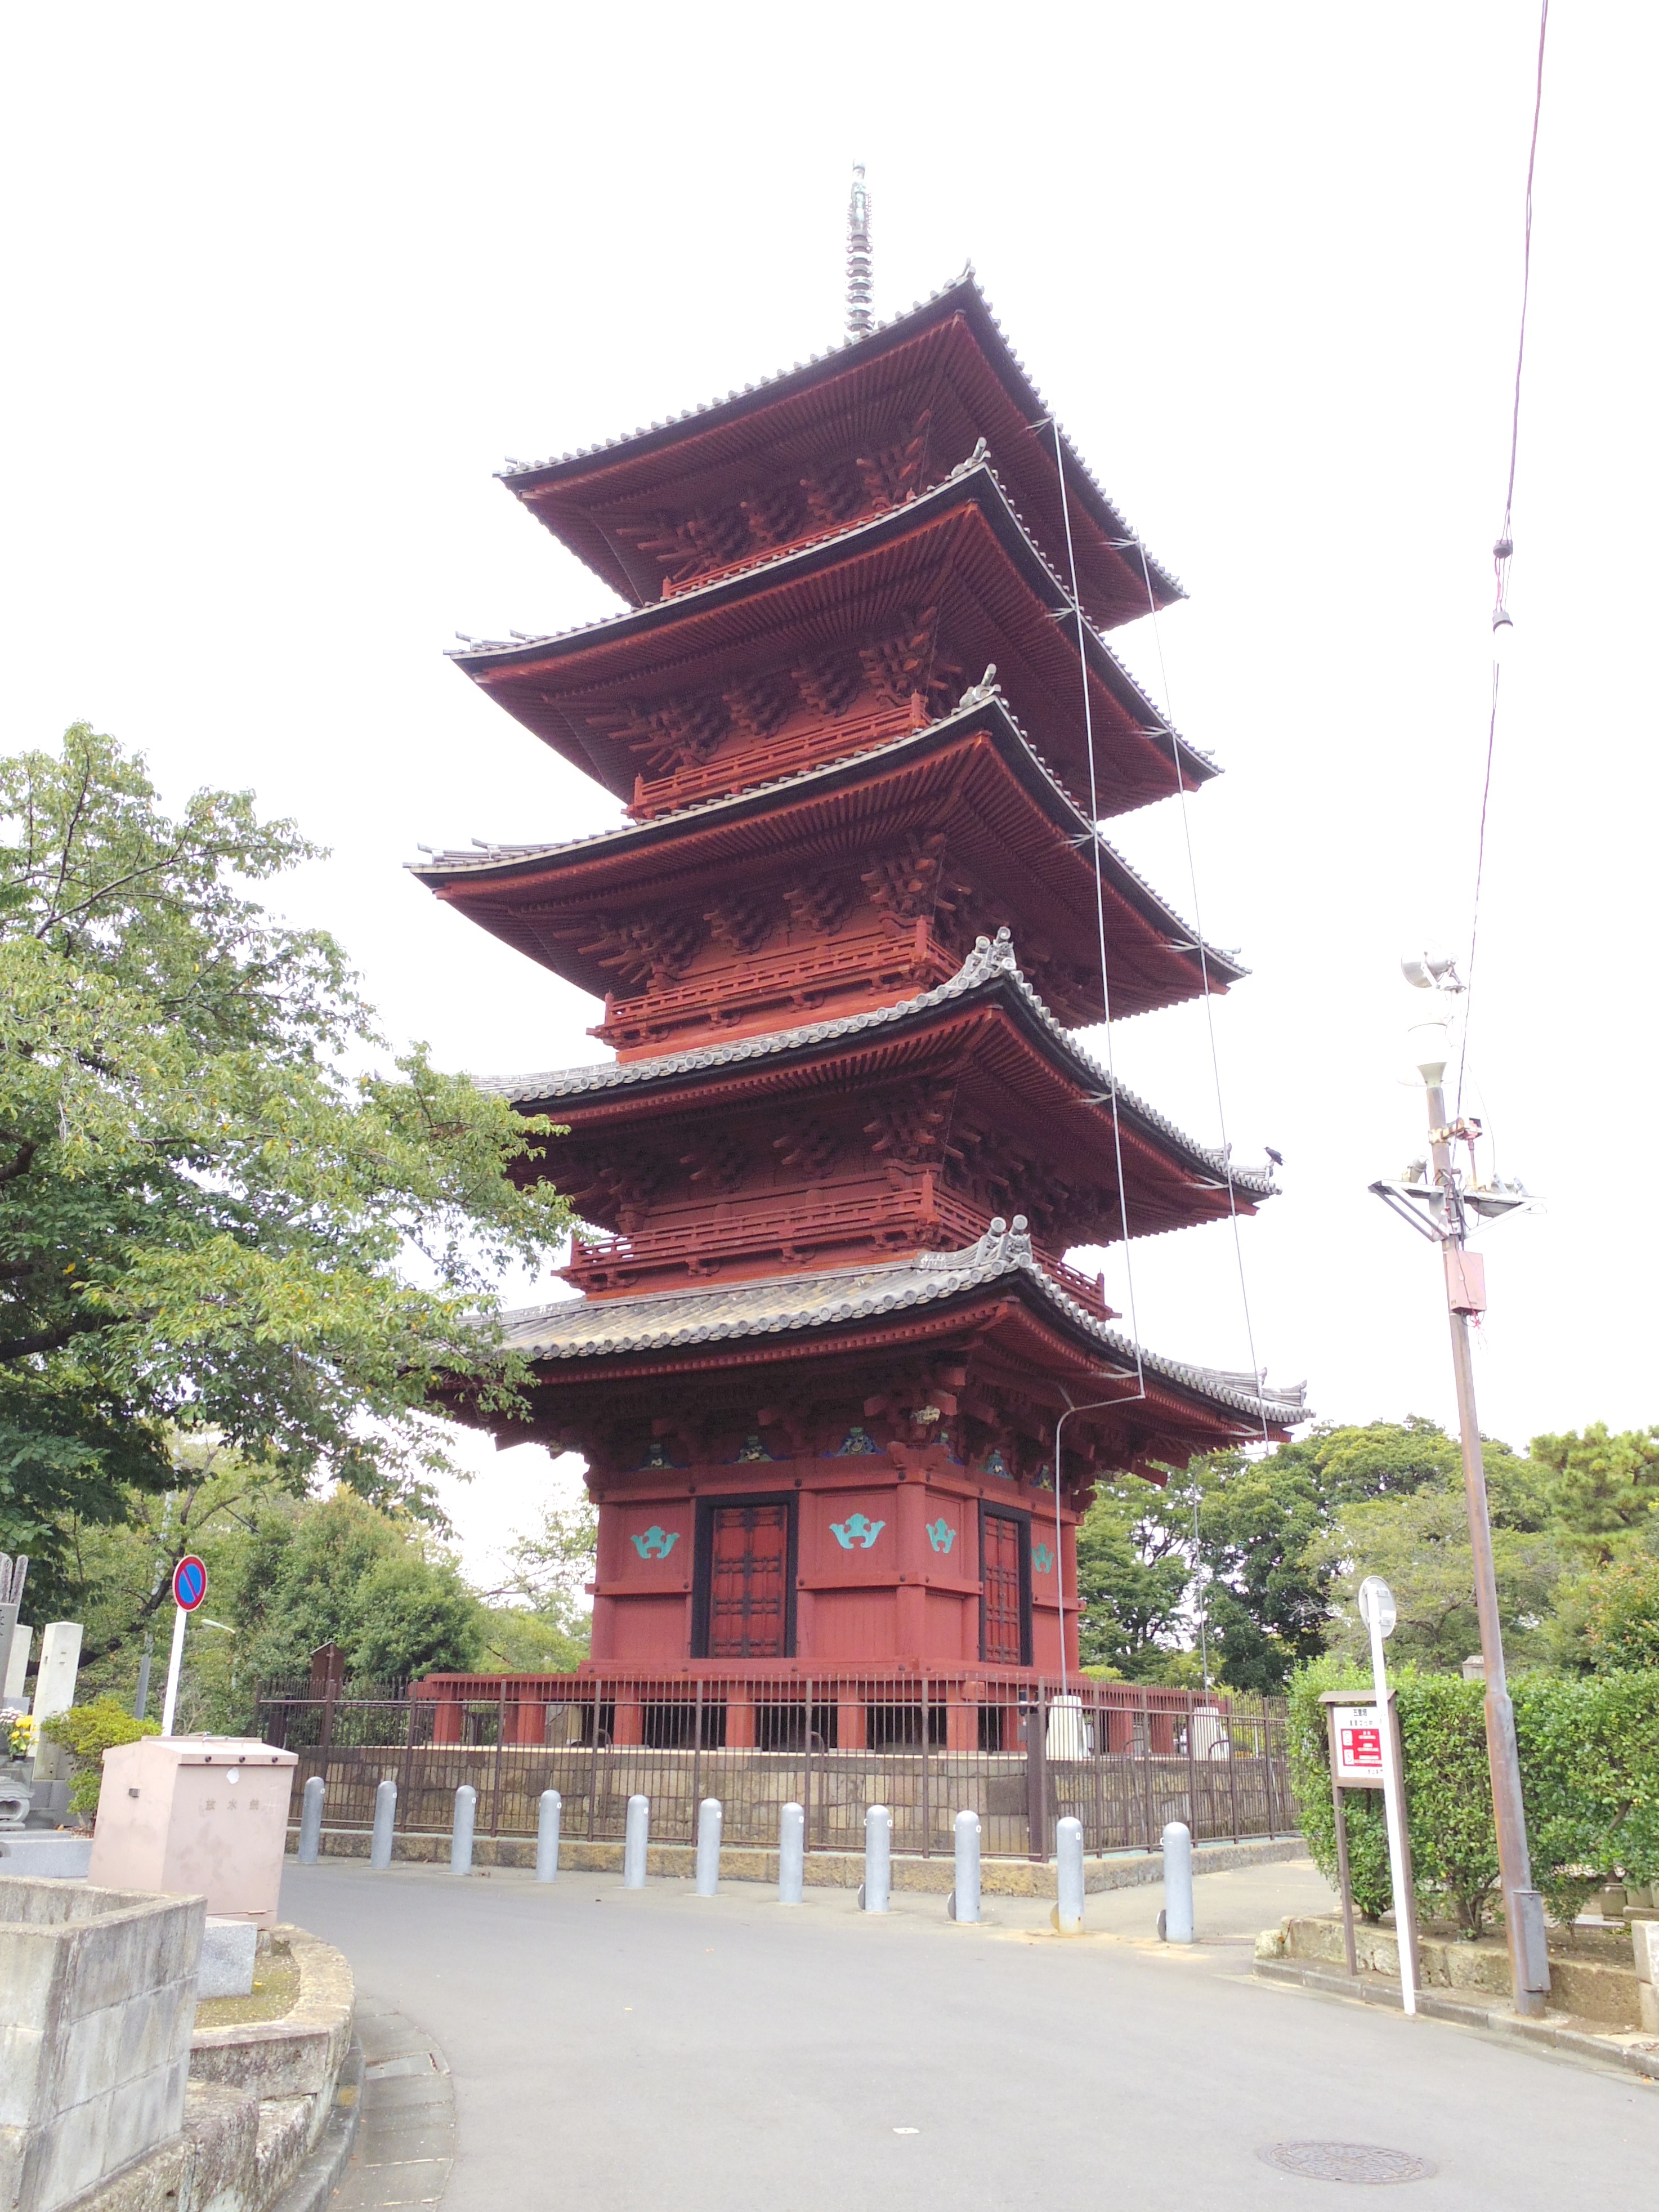 池上本門寺の五重塔。慶長13年建立(1608年)。